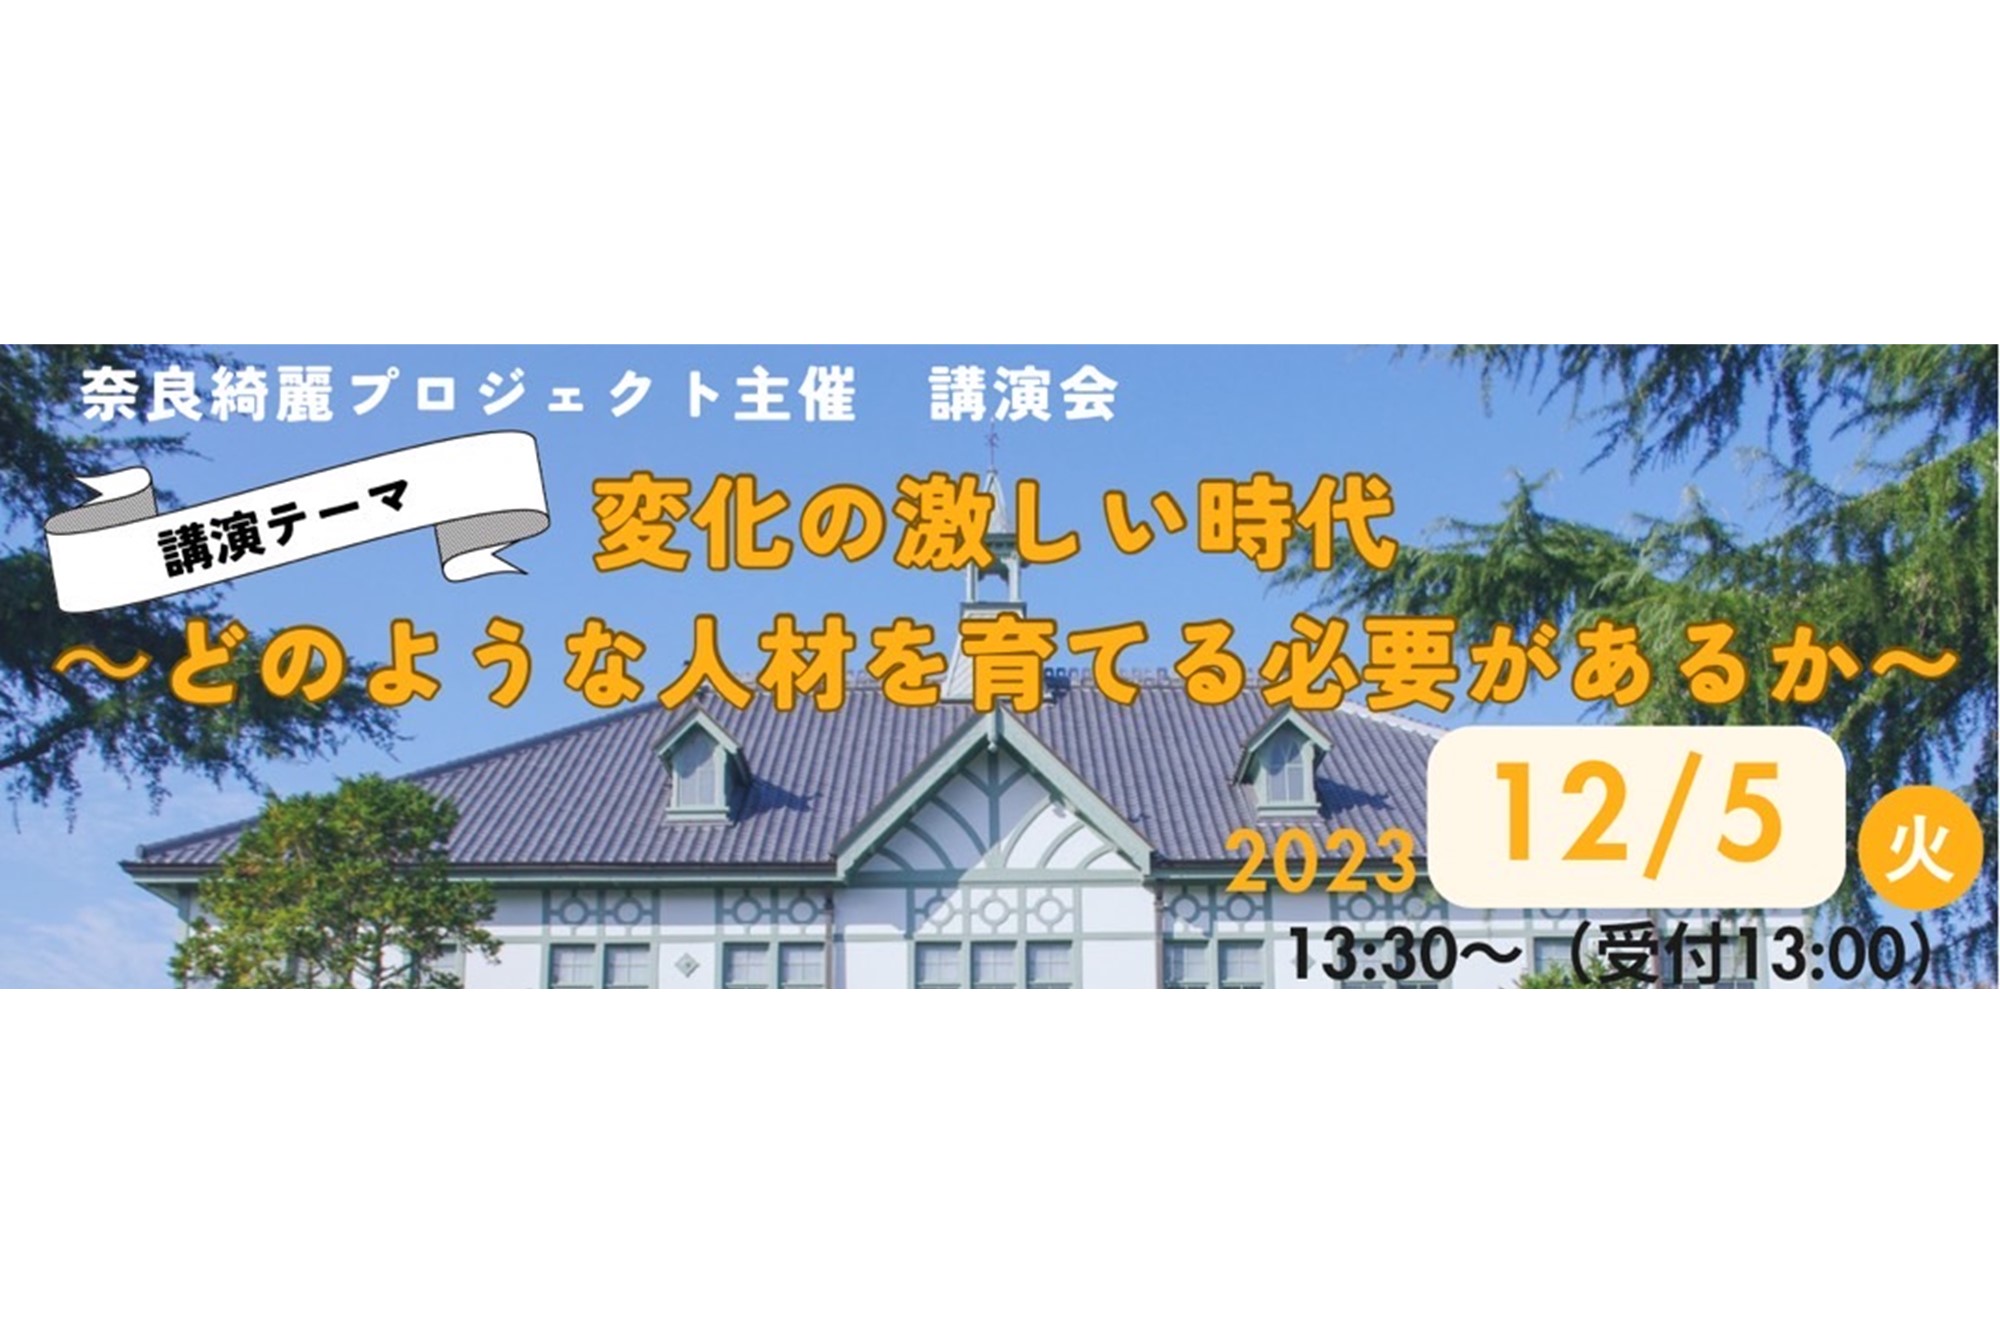 【告知】12/5 奈良女子大学 交流テラスにて講演会を実施します